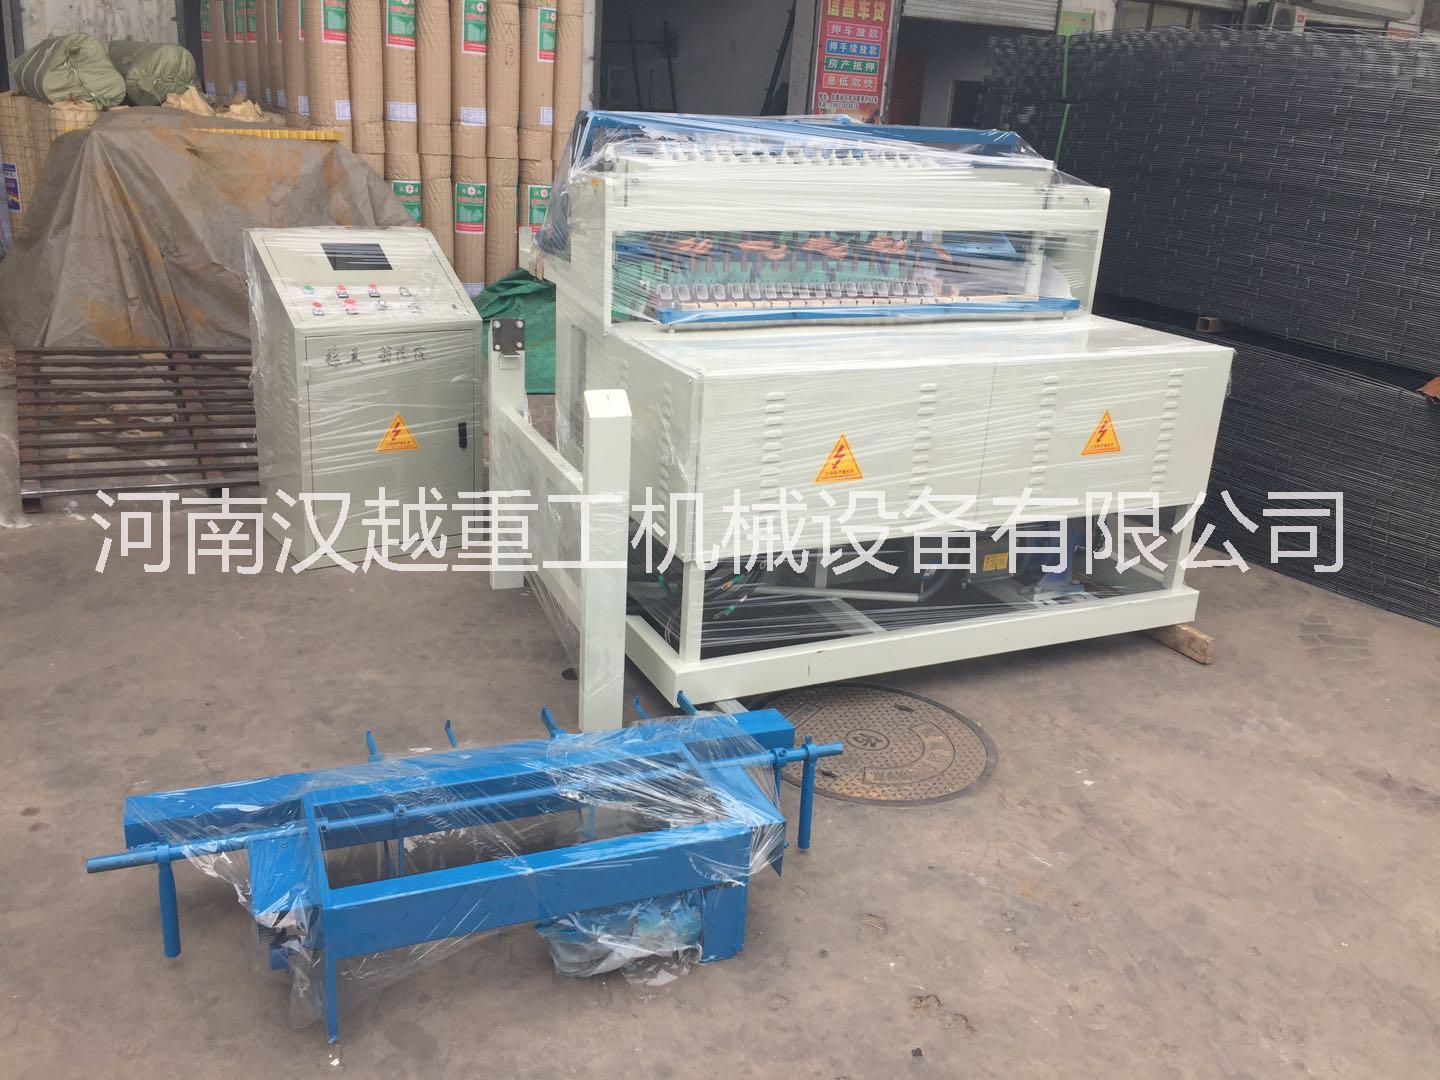 天津钢筋网焊网机哪里买 钢筋网焊网机厂家